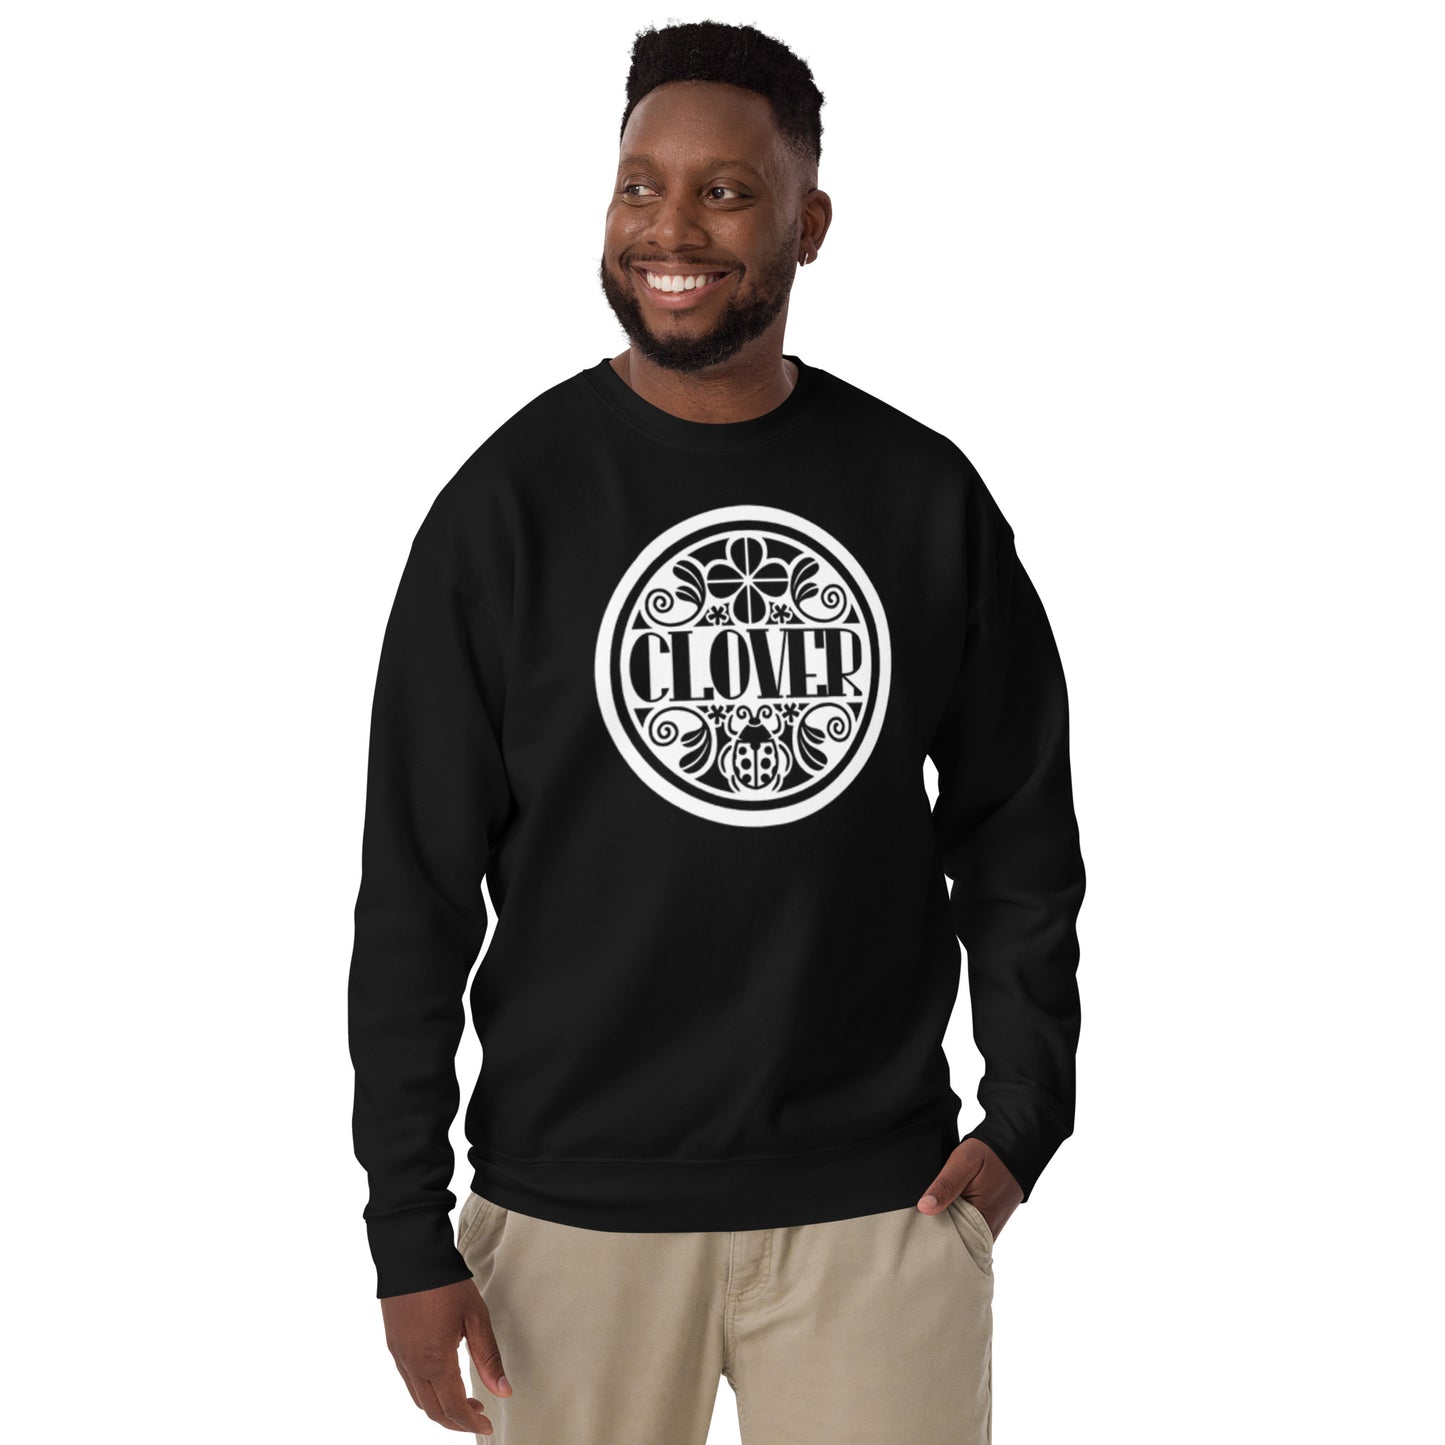 Clover - Printed Unisex Premium Sweatshirt